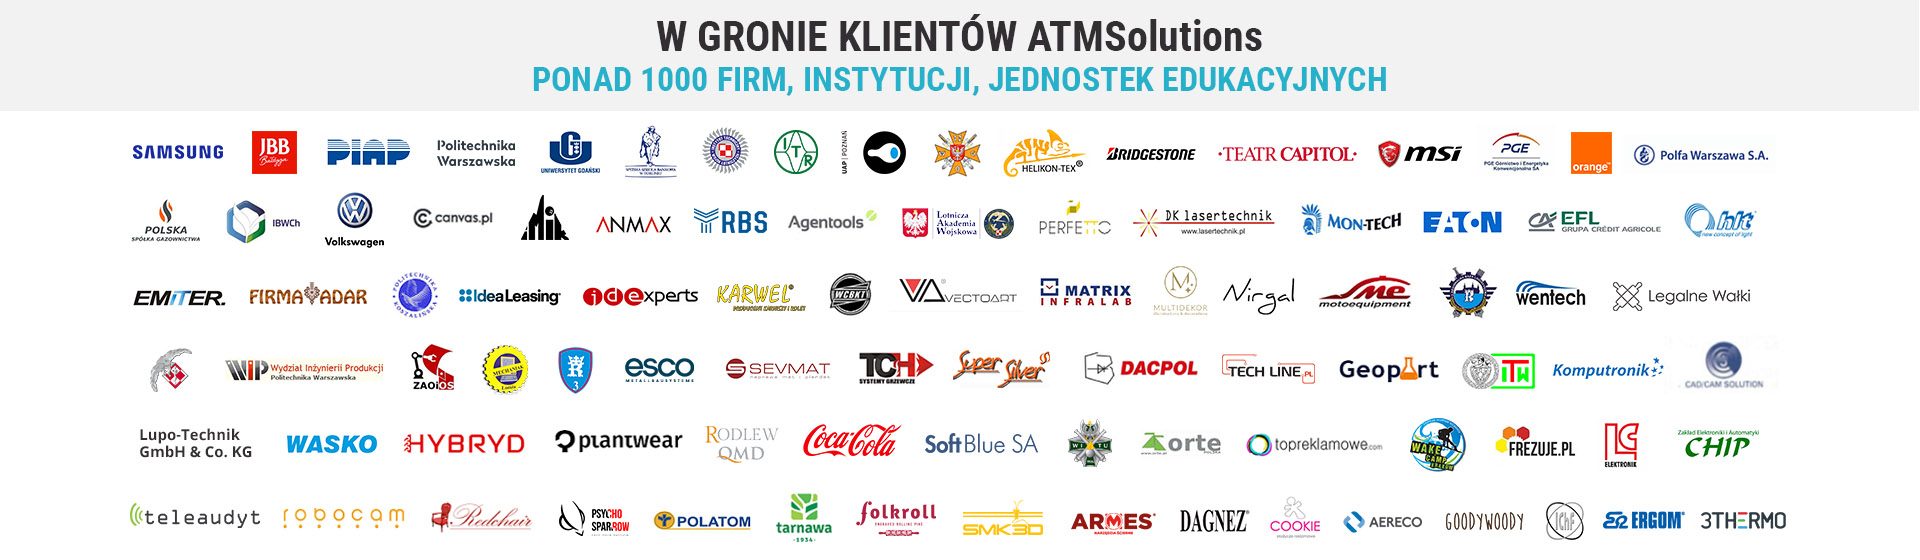 W gronie klientów ATMSolutions ponad 1000 firm, instytucji, jednostek edukacyjnych